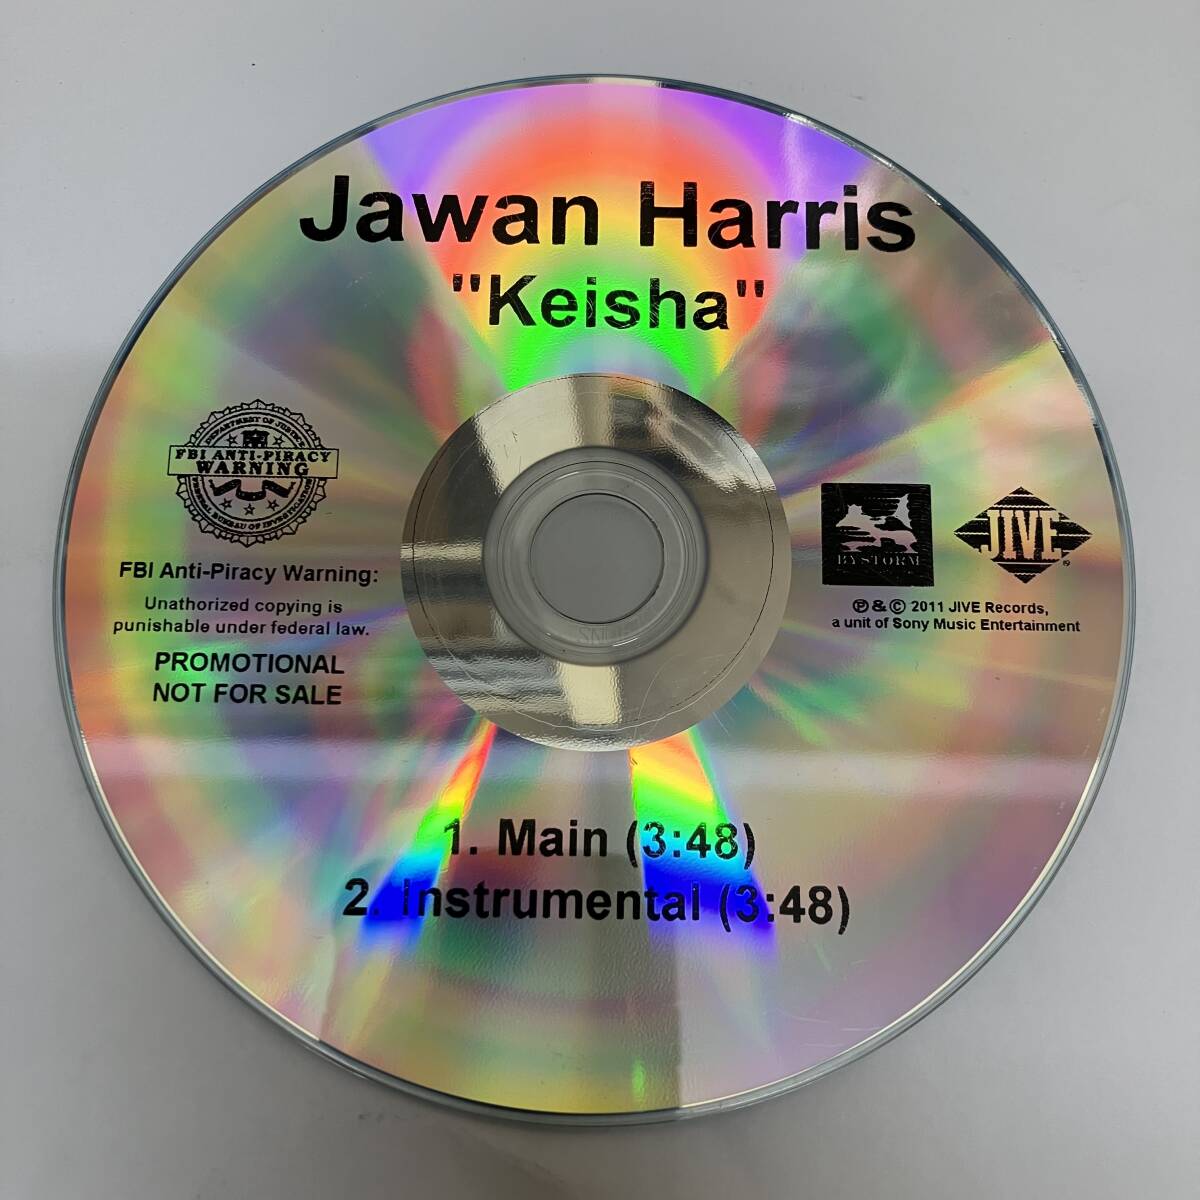 裸3535 HIPHOP,R&B JAWAN HARRIS - KEISHA INST,シングル,PROMO盤 CD 中古品_画像1